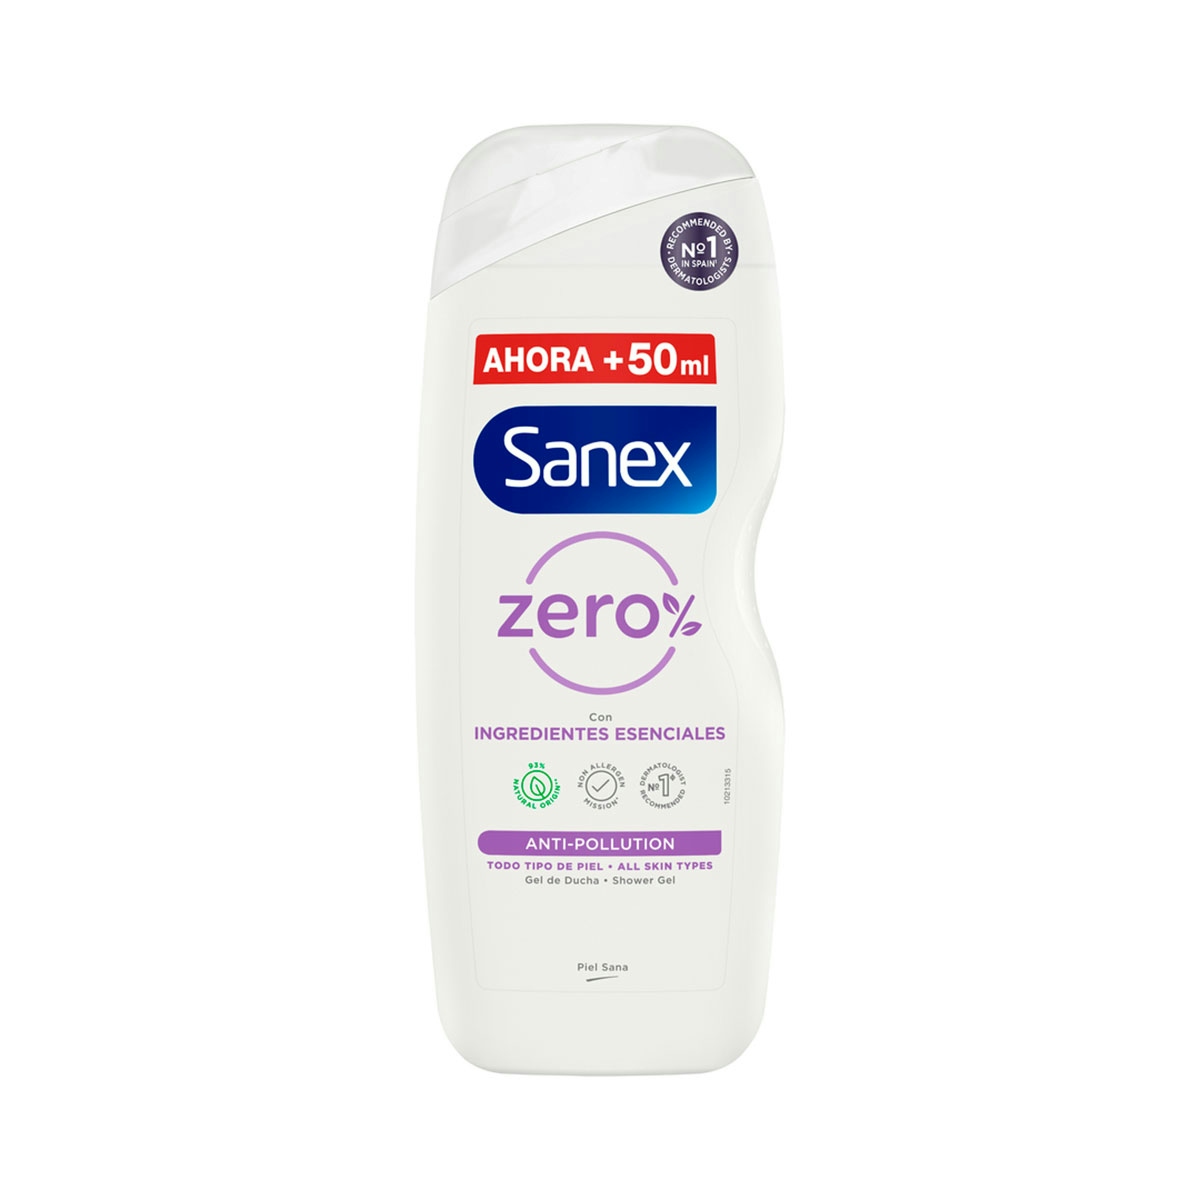 Gel de ducha o baño Sanex  Zero% Anti-Pollution con ingredientes esenciales 600ml